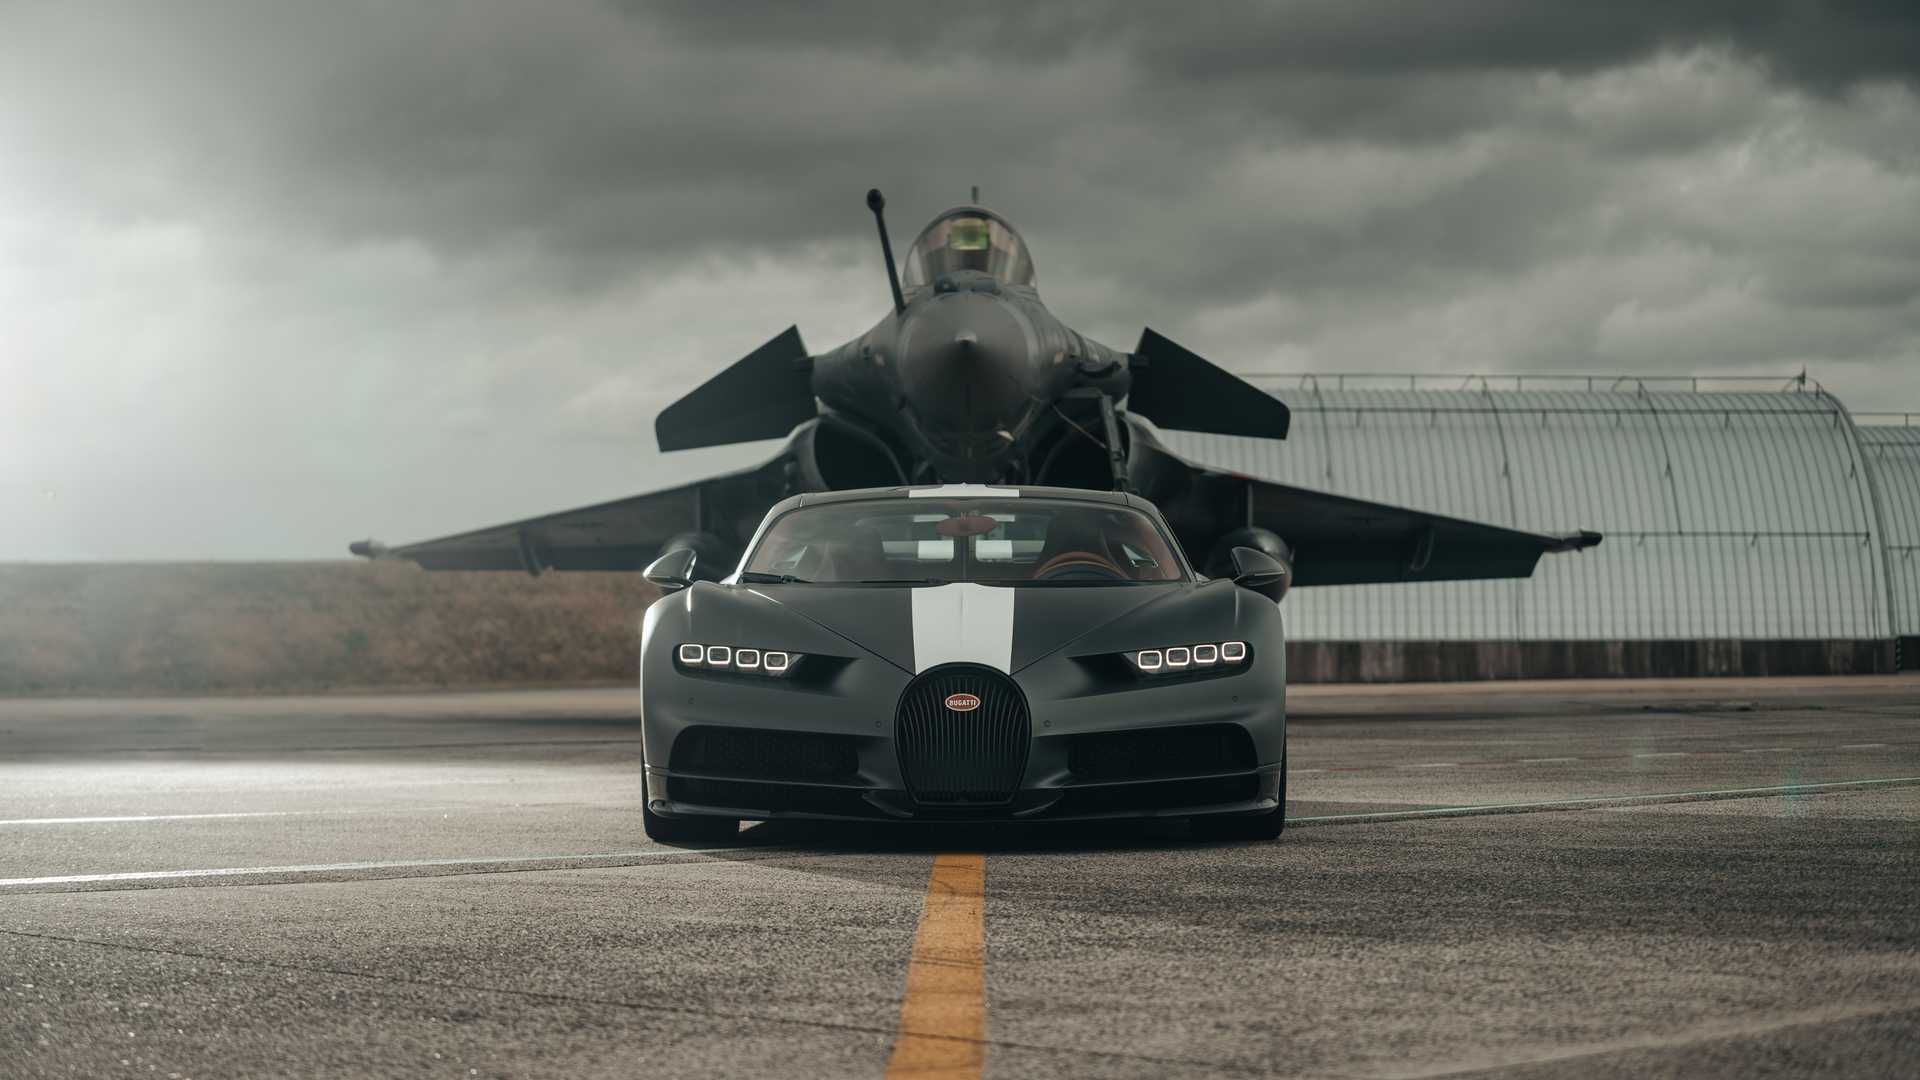 Siêu xe Bugatti đua với máy bay chiến đấu và cái kết làm bất ngờ tất cả - Ảnh 2.